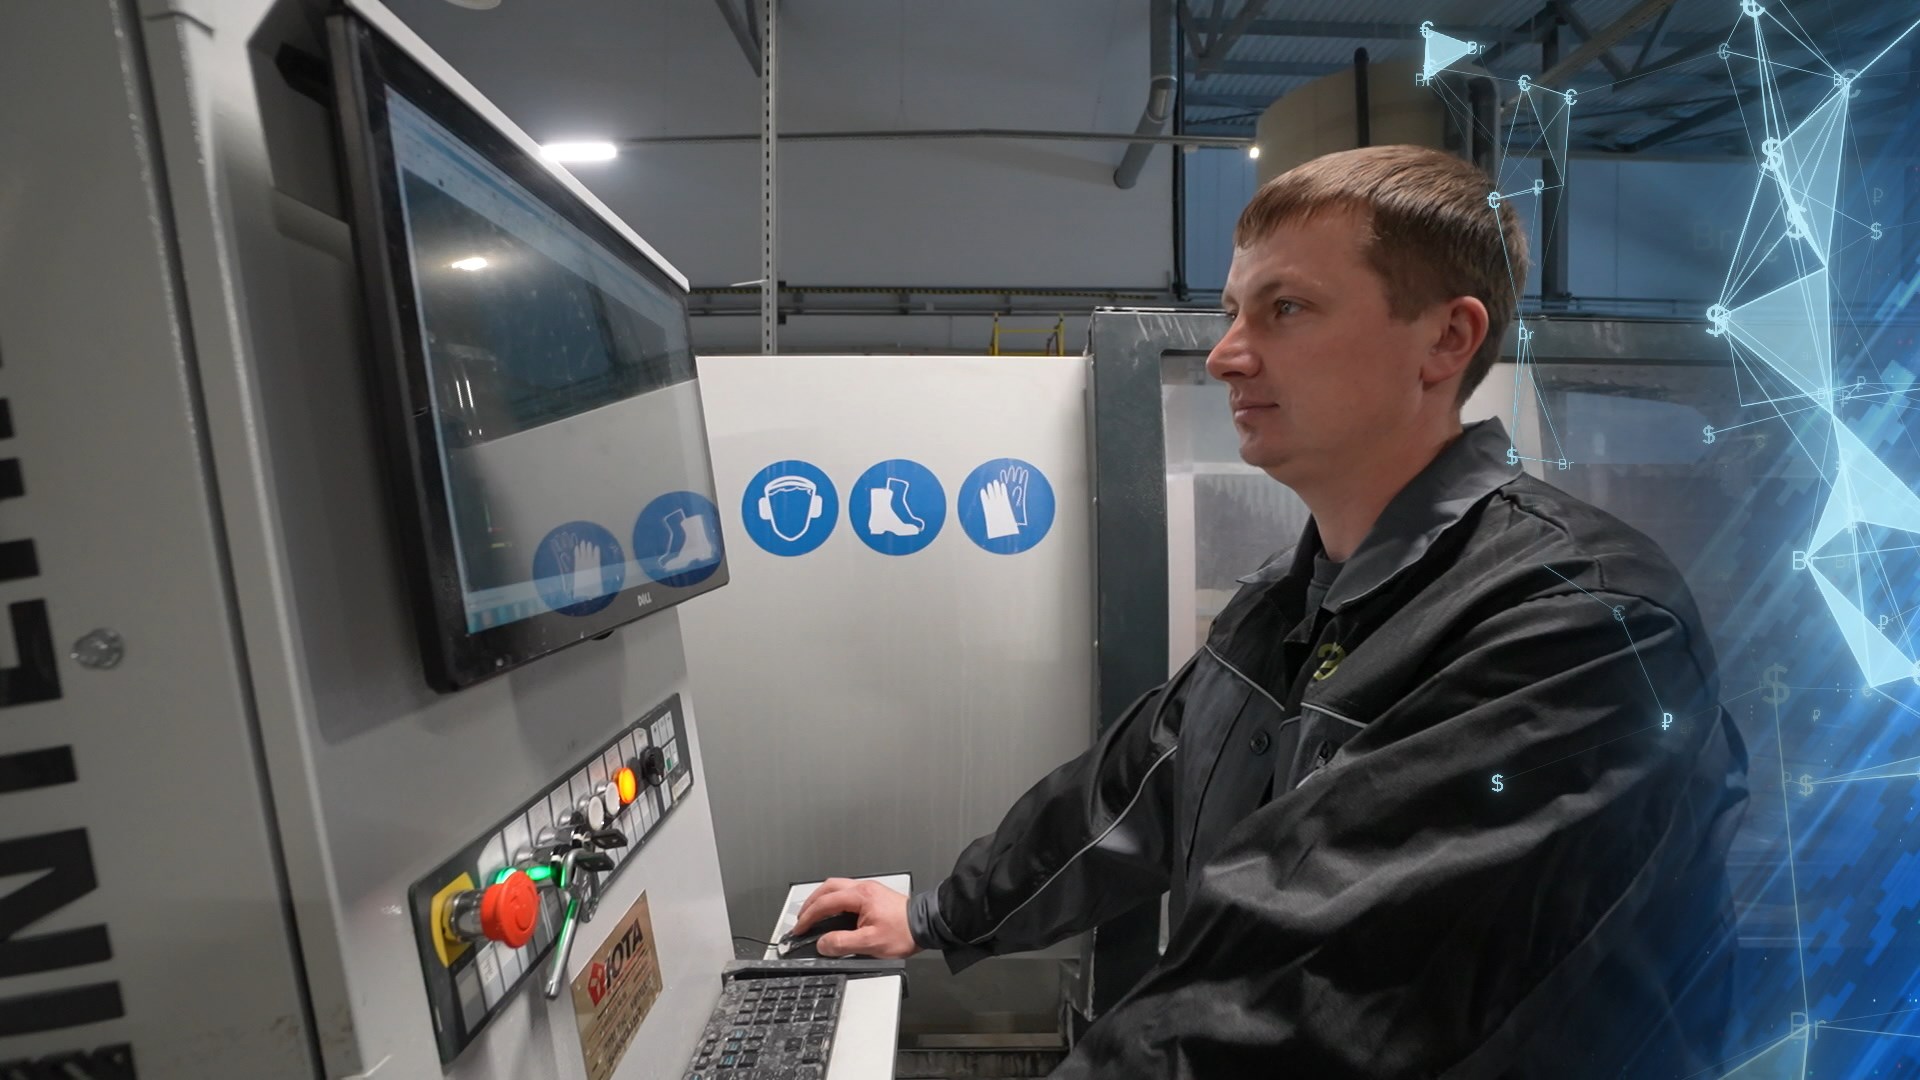 Производство видеоэндоскопических систем наладят в Беларуси. Этим займется новый резидент «Великого камня»